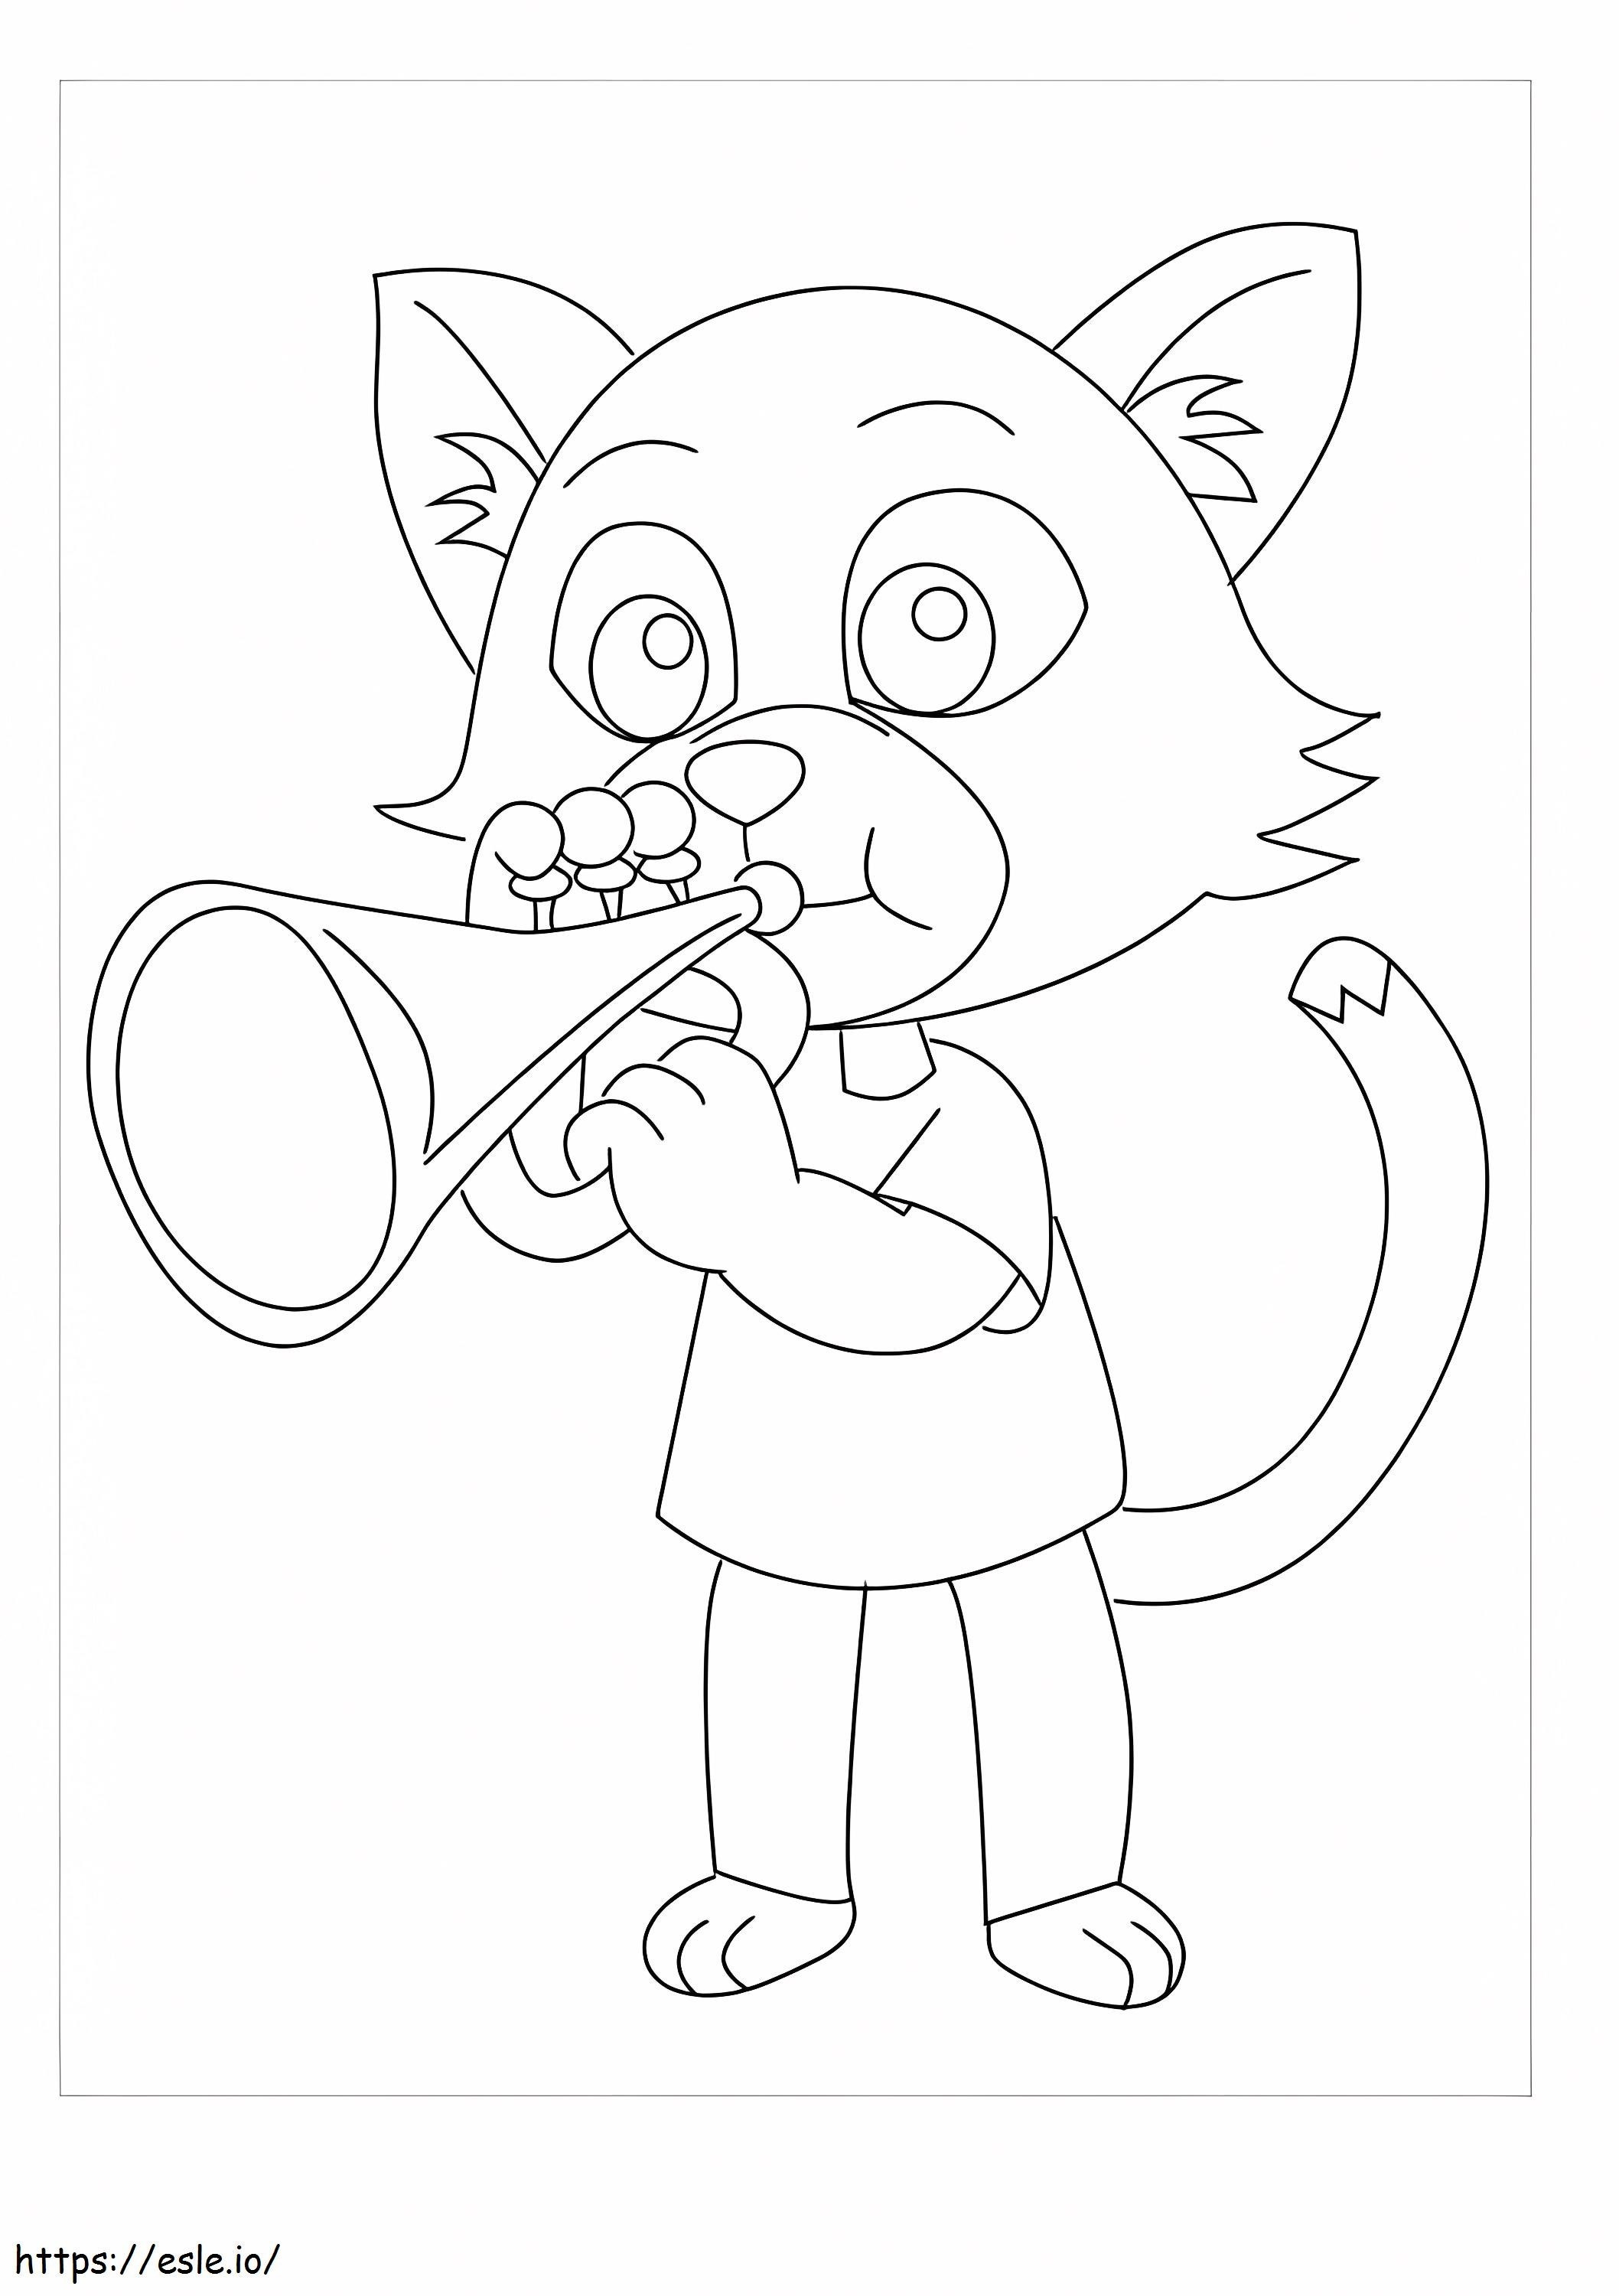 Gato de dibujos animados tocando trompeta para colorear